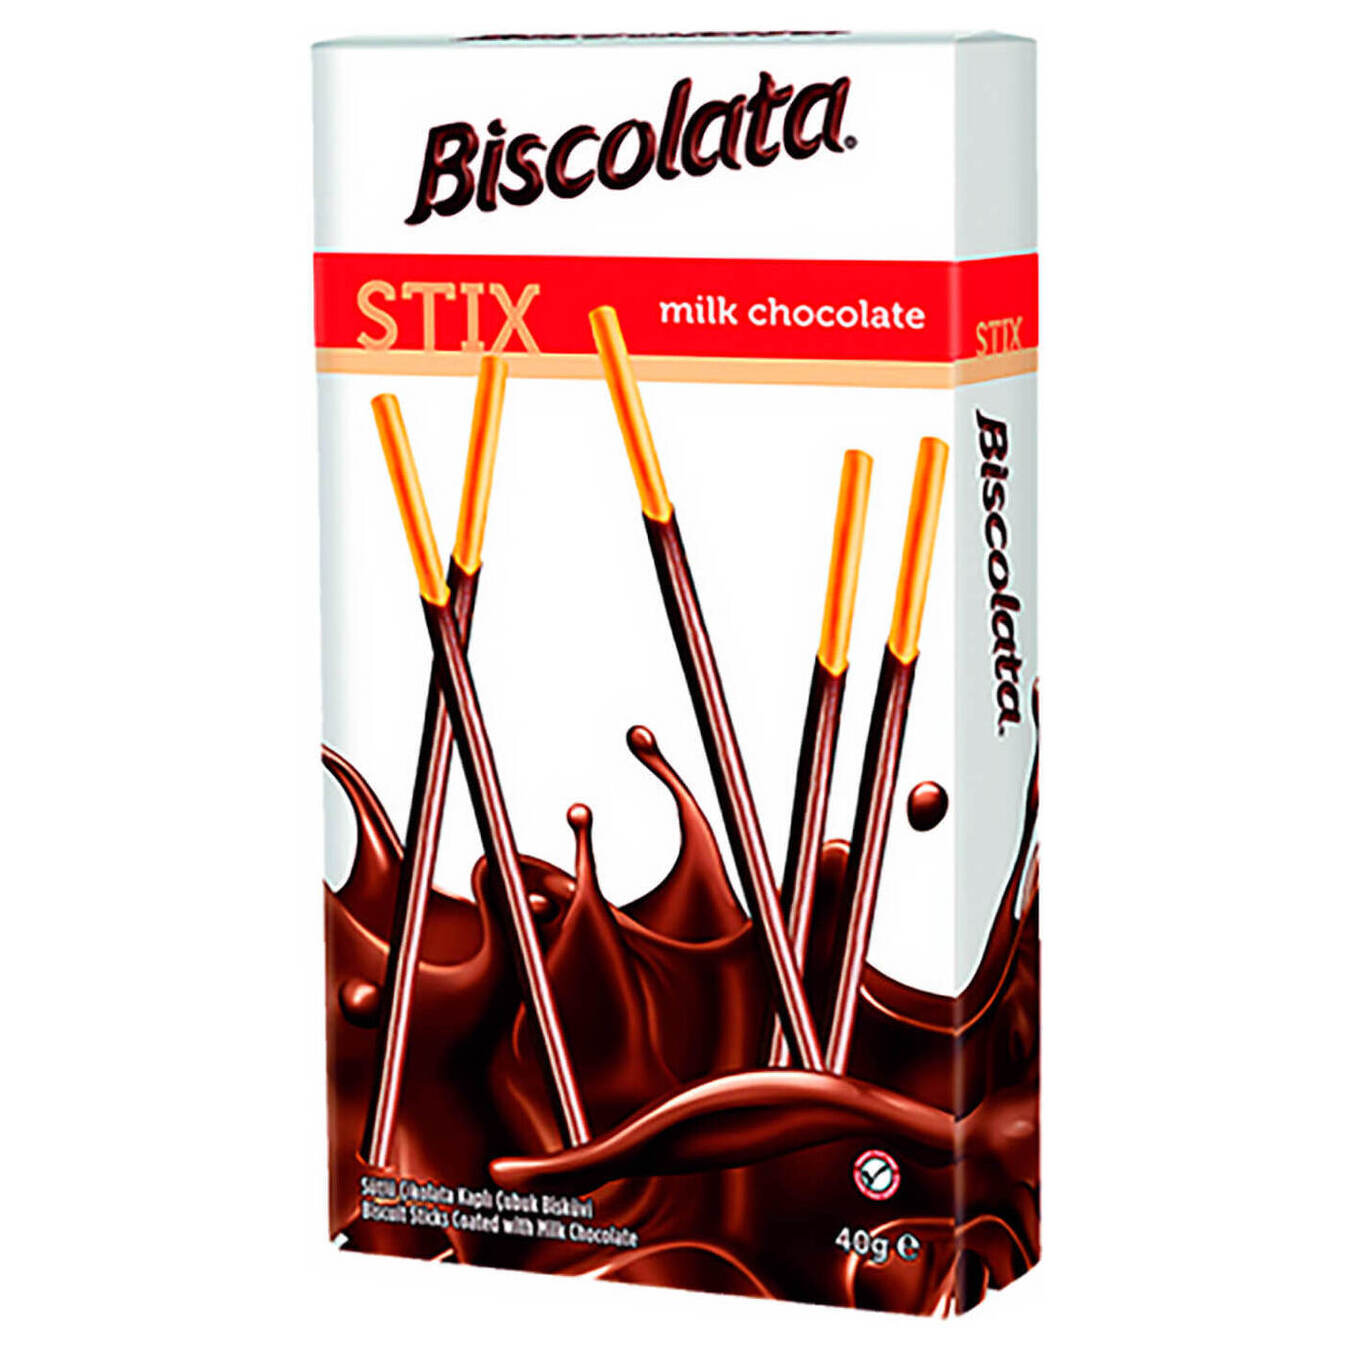 Straws Biscolata Stix in Milk Chocolate 40g